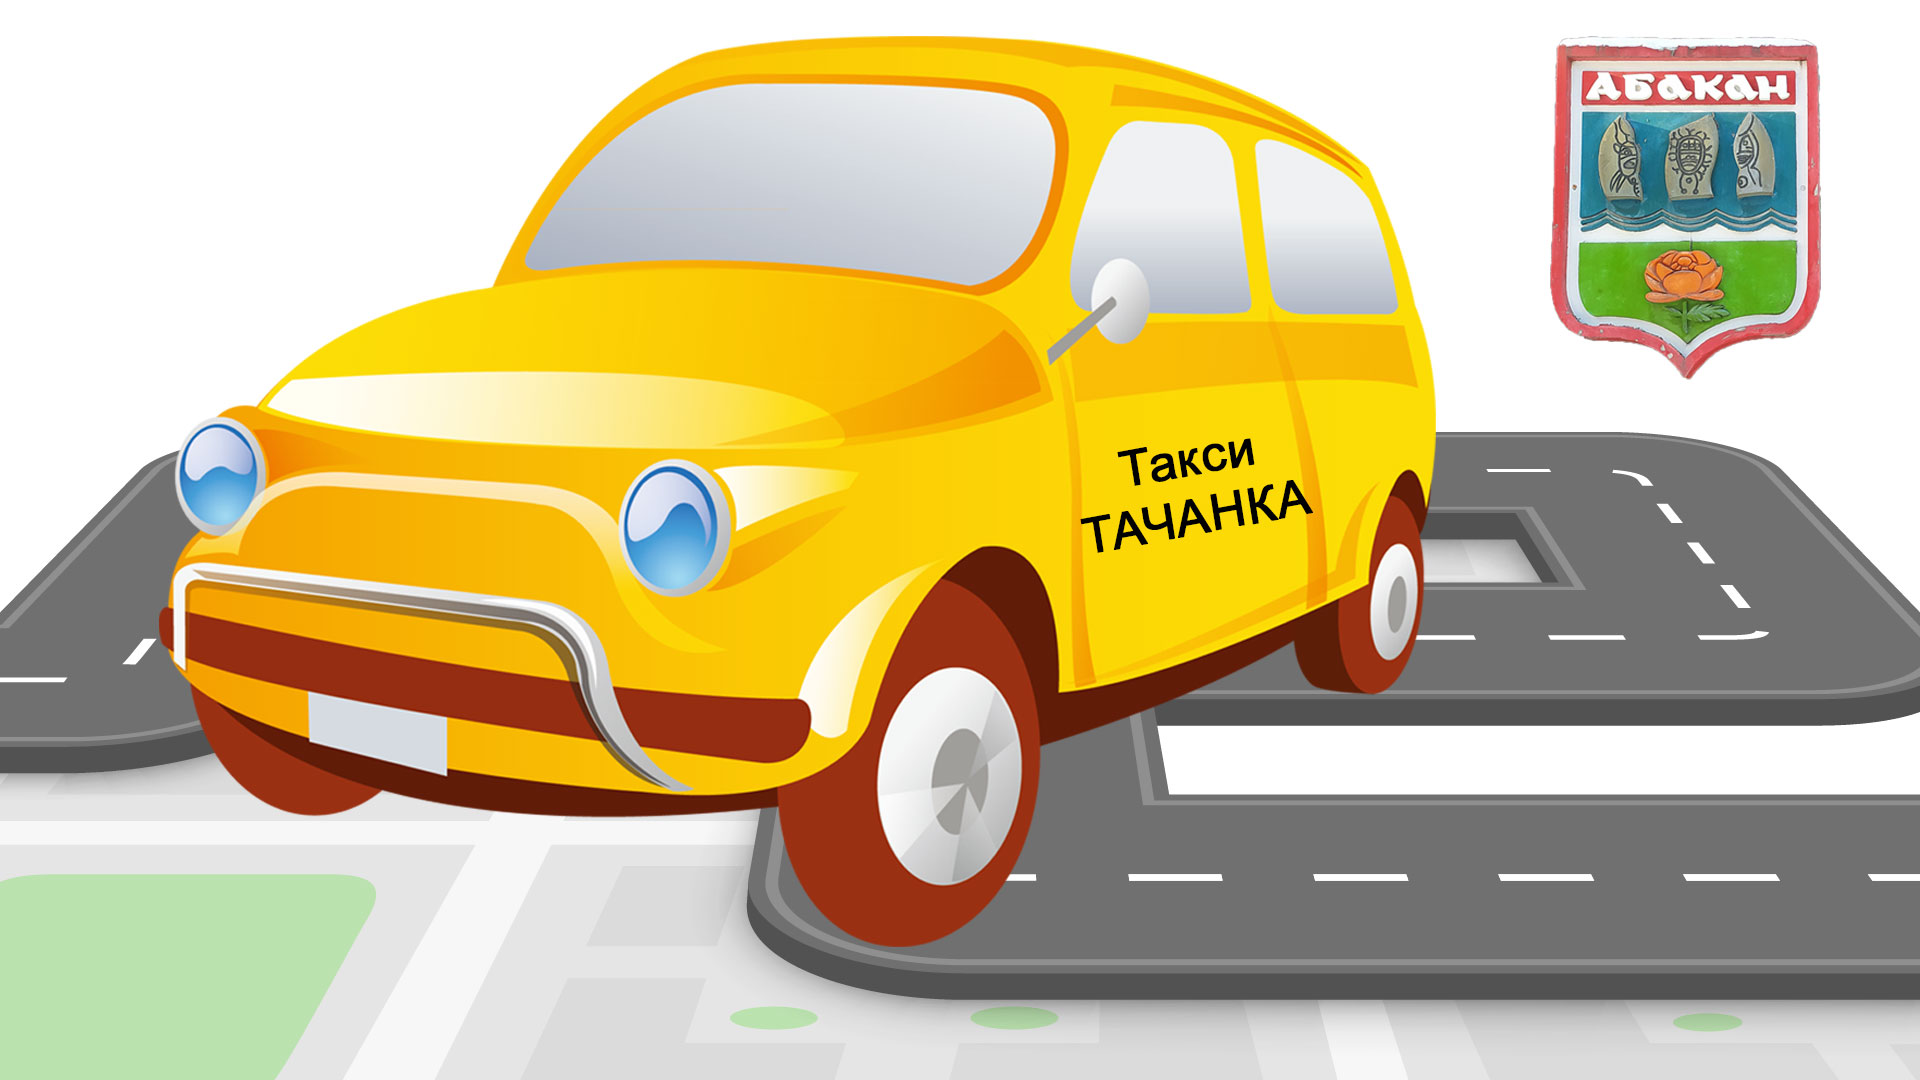 Машина с наклейкой такси "Тачанка" и герб Абакан.